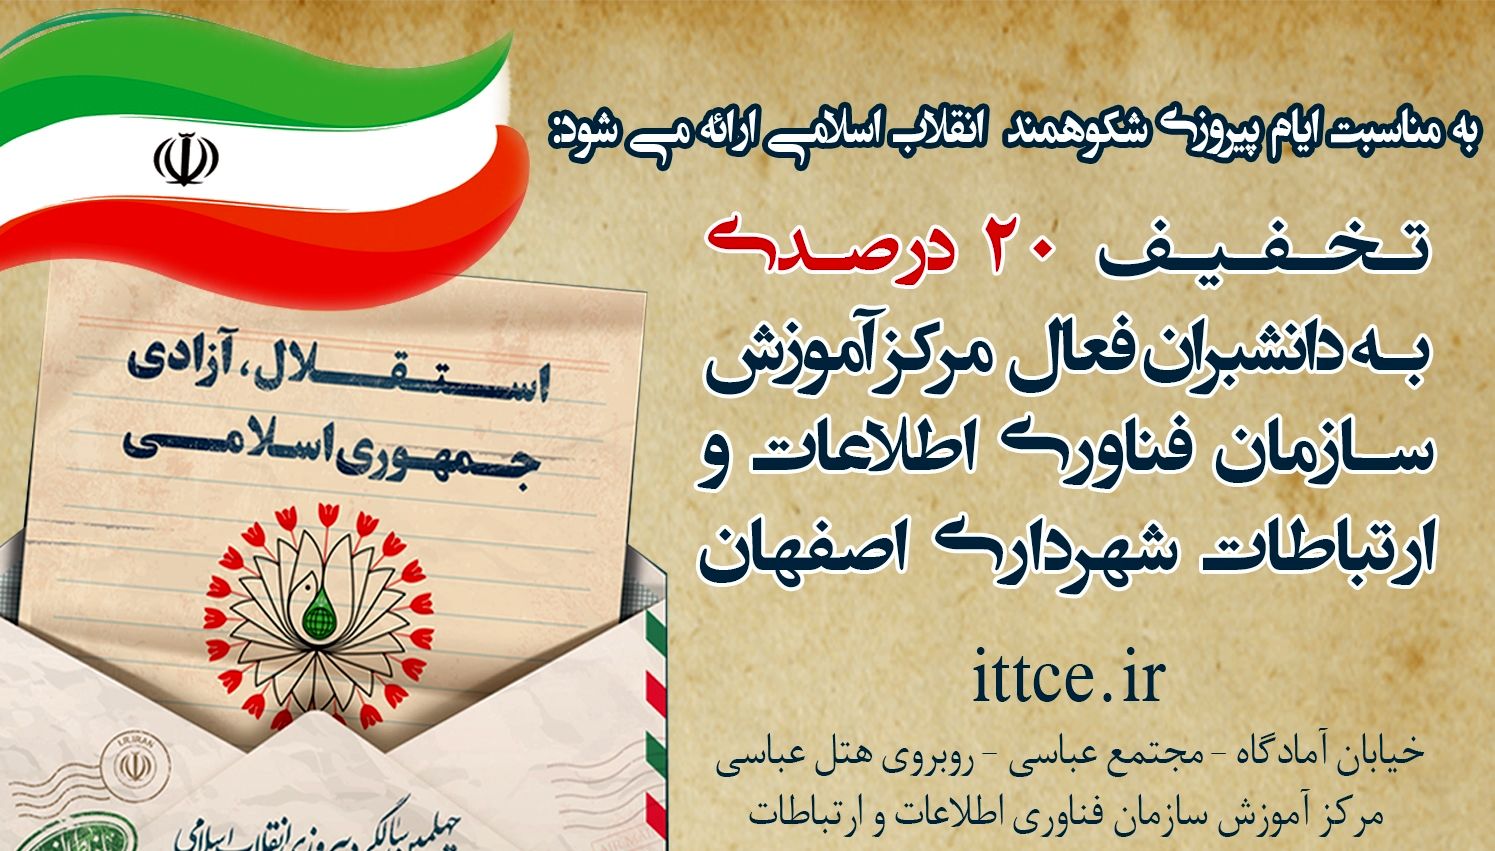 ارائه تخفیف 20 درصدی برای دانشبران فعال مرکز آموزش سازمان فاوا شهرداری اصفهان